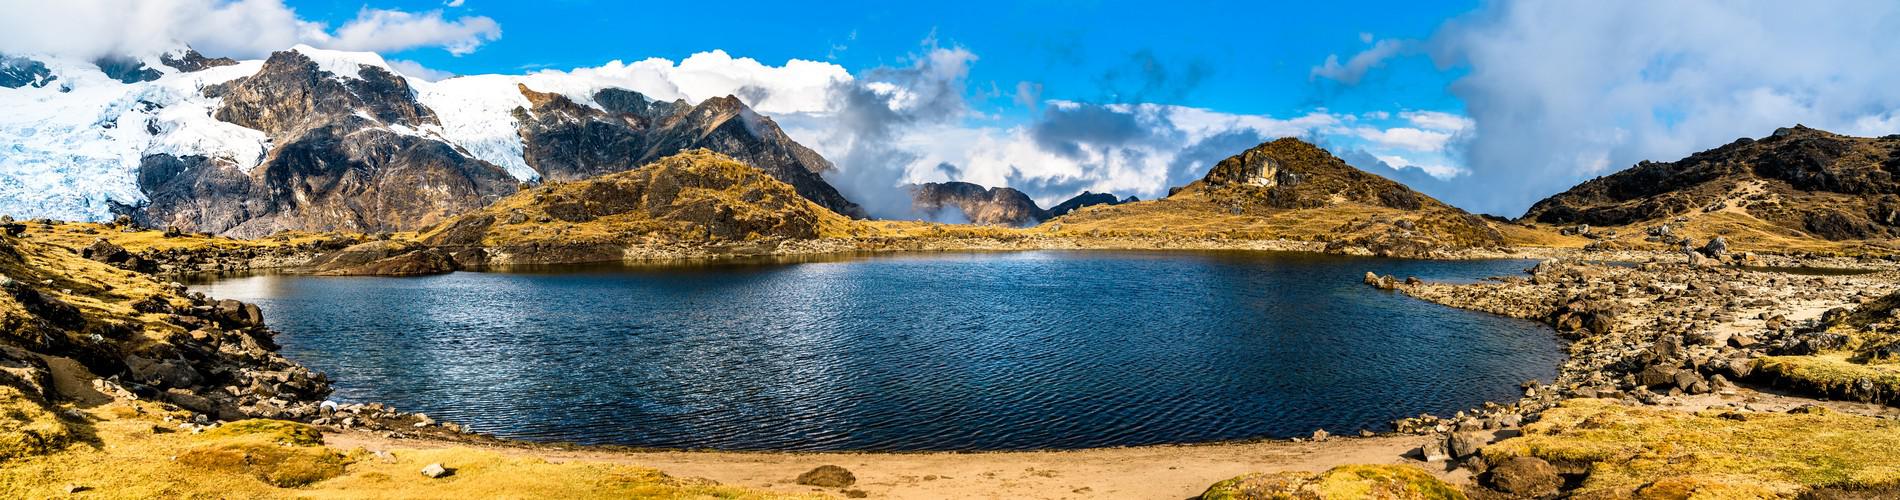 Best gearless Hiking Destinations in Peru